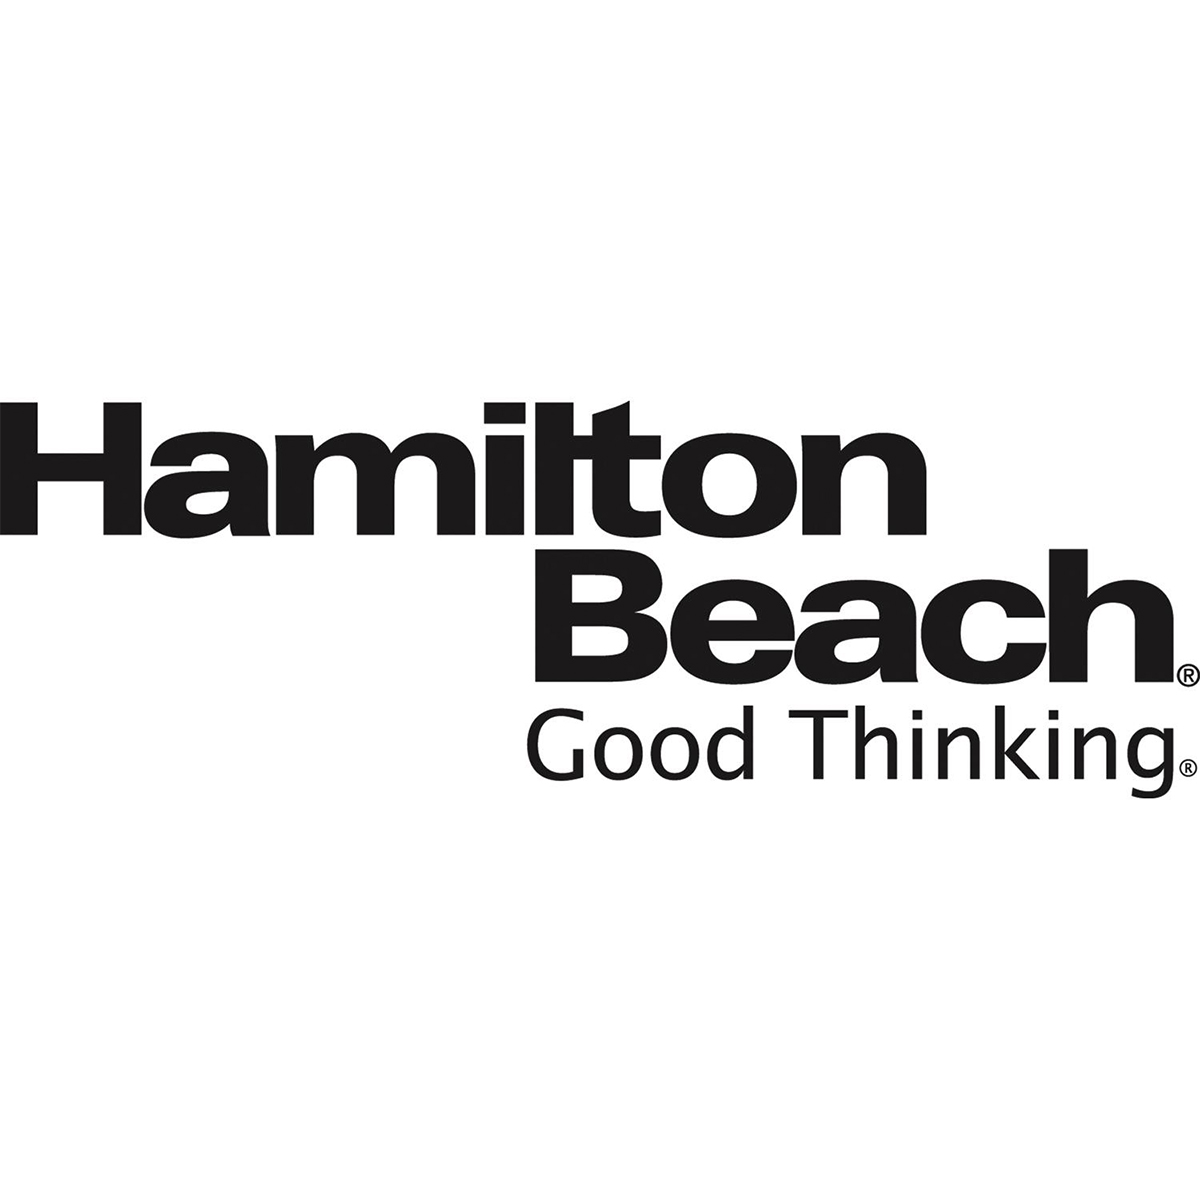 Hamilton Beach Good Thinking